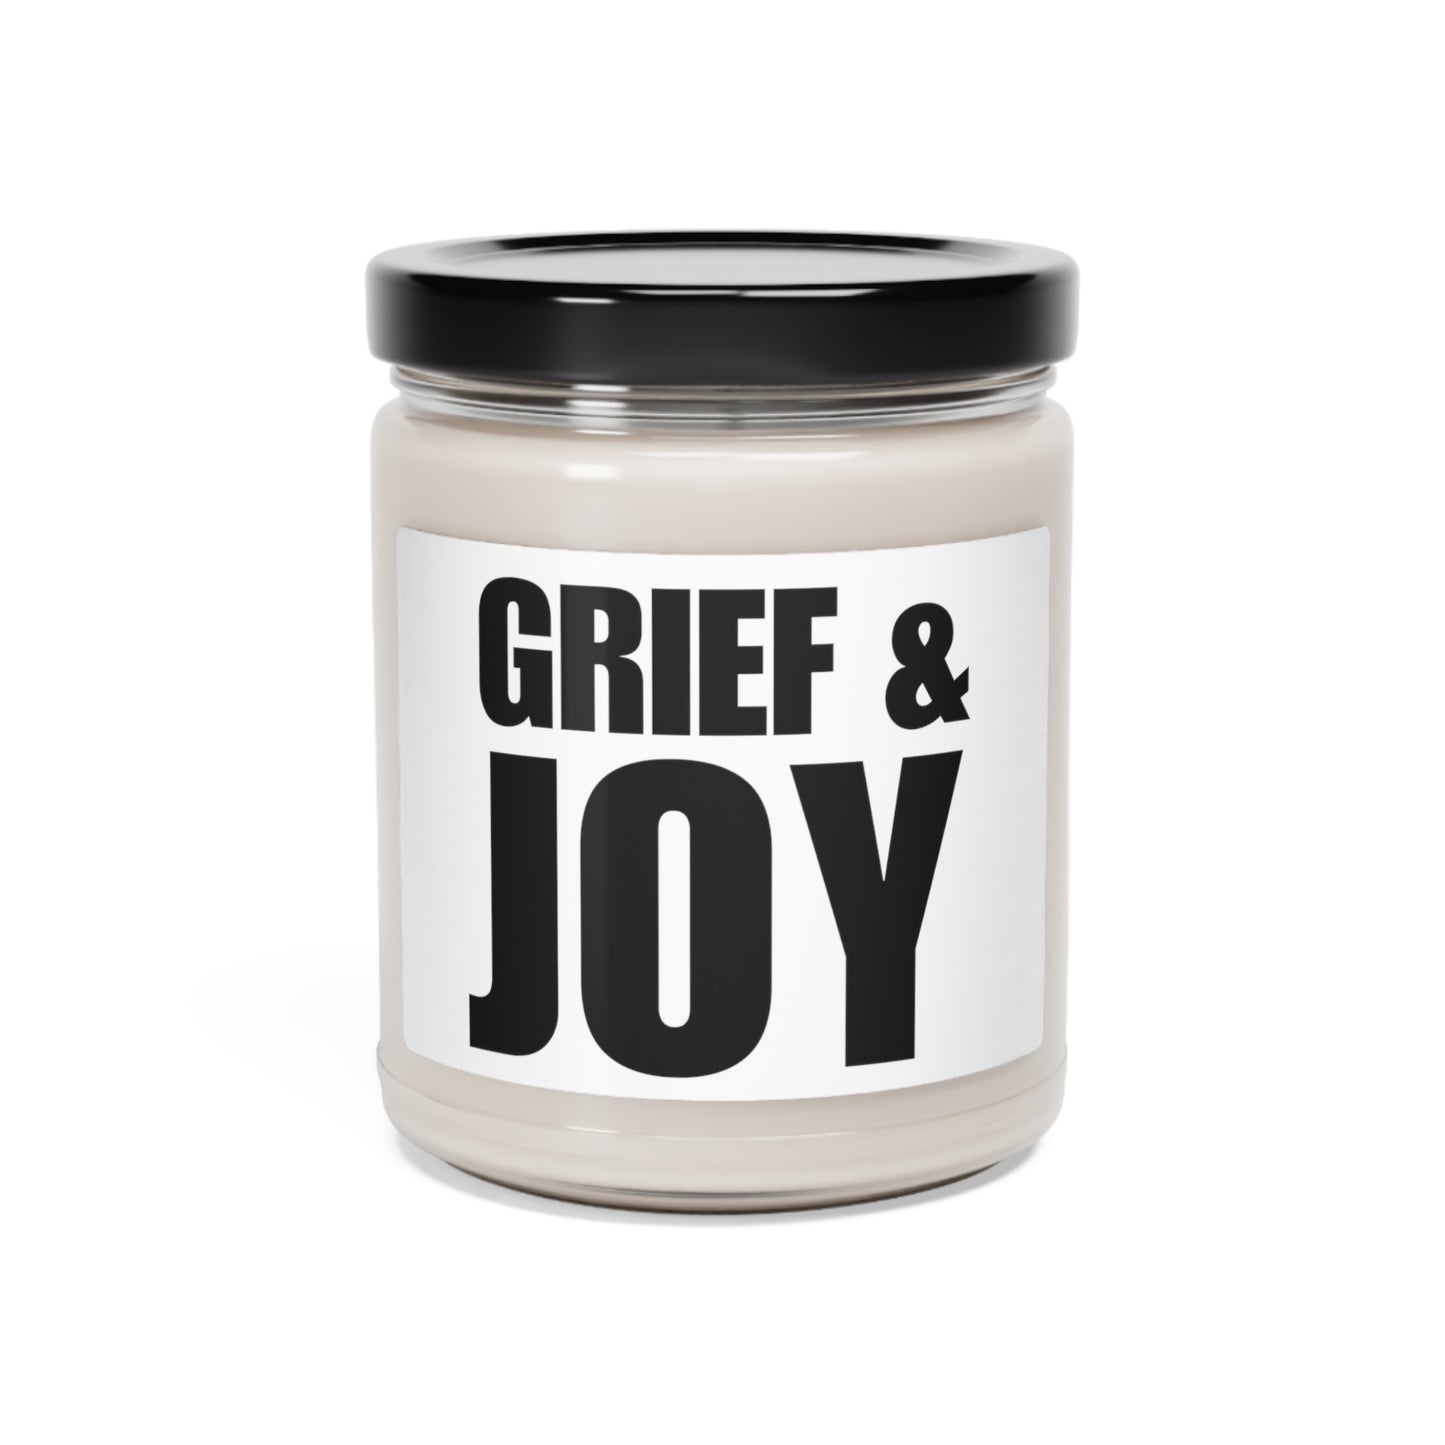 Grief & Joy